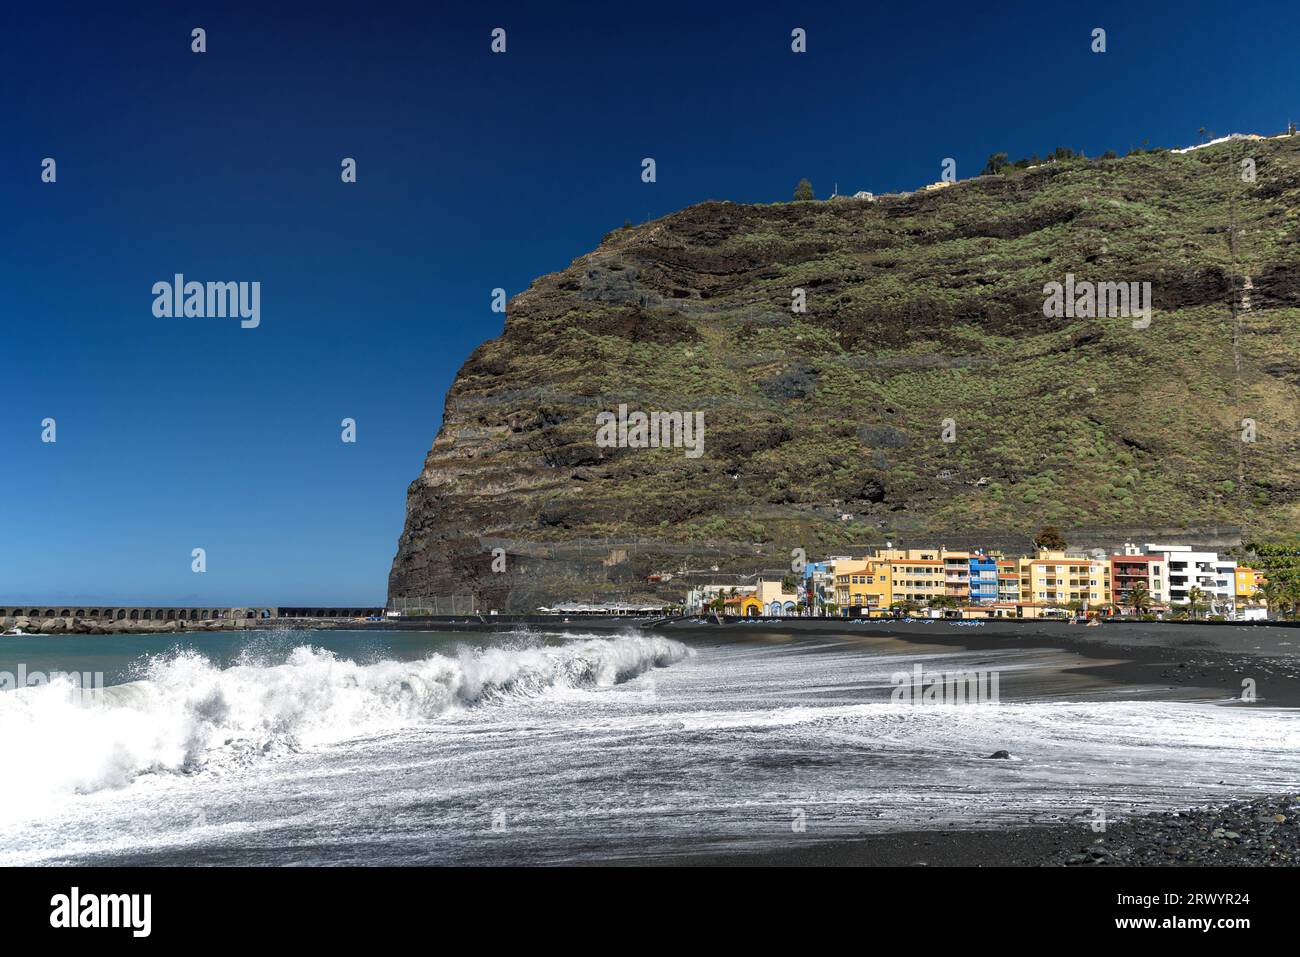 Puerto de Tazacorte, Canary Islands, La Palma Stock Photo